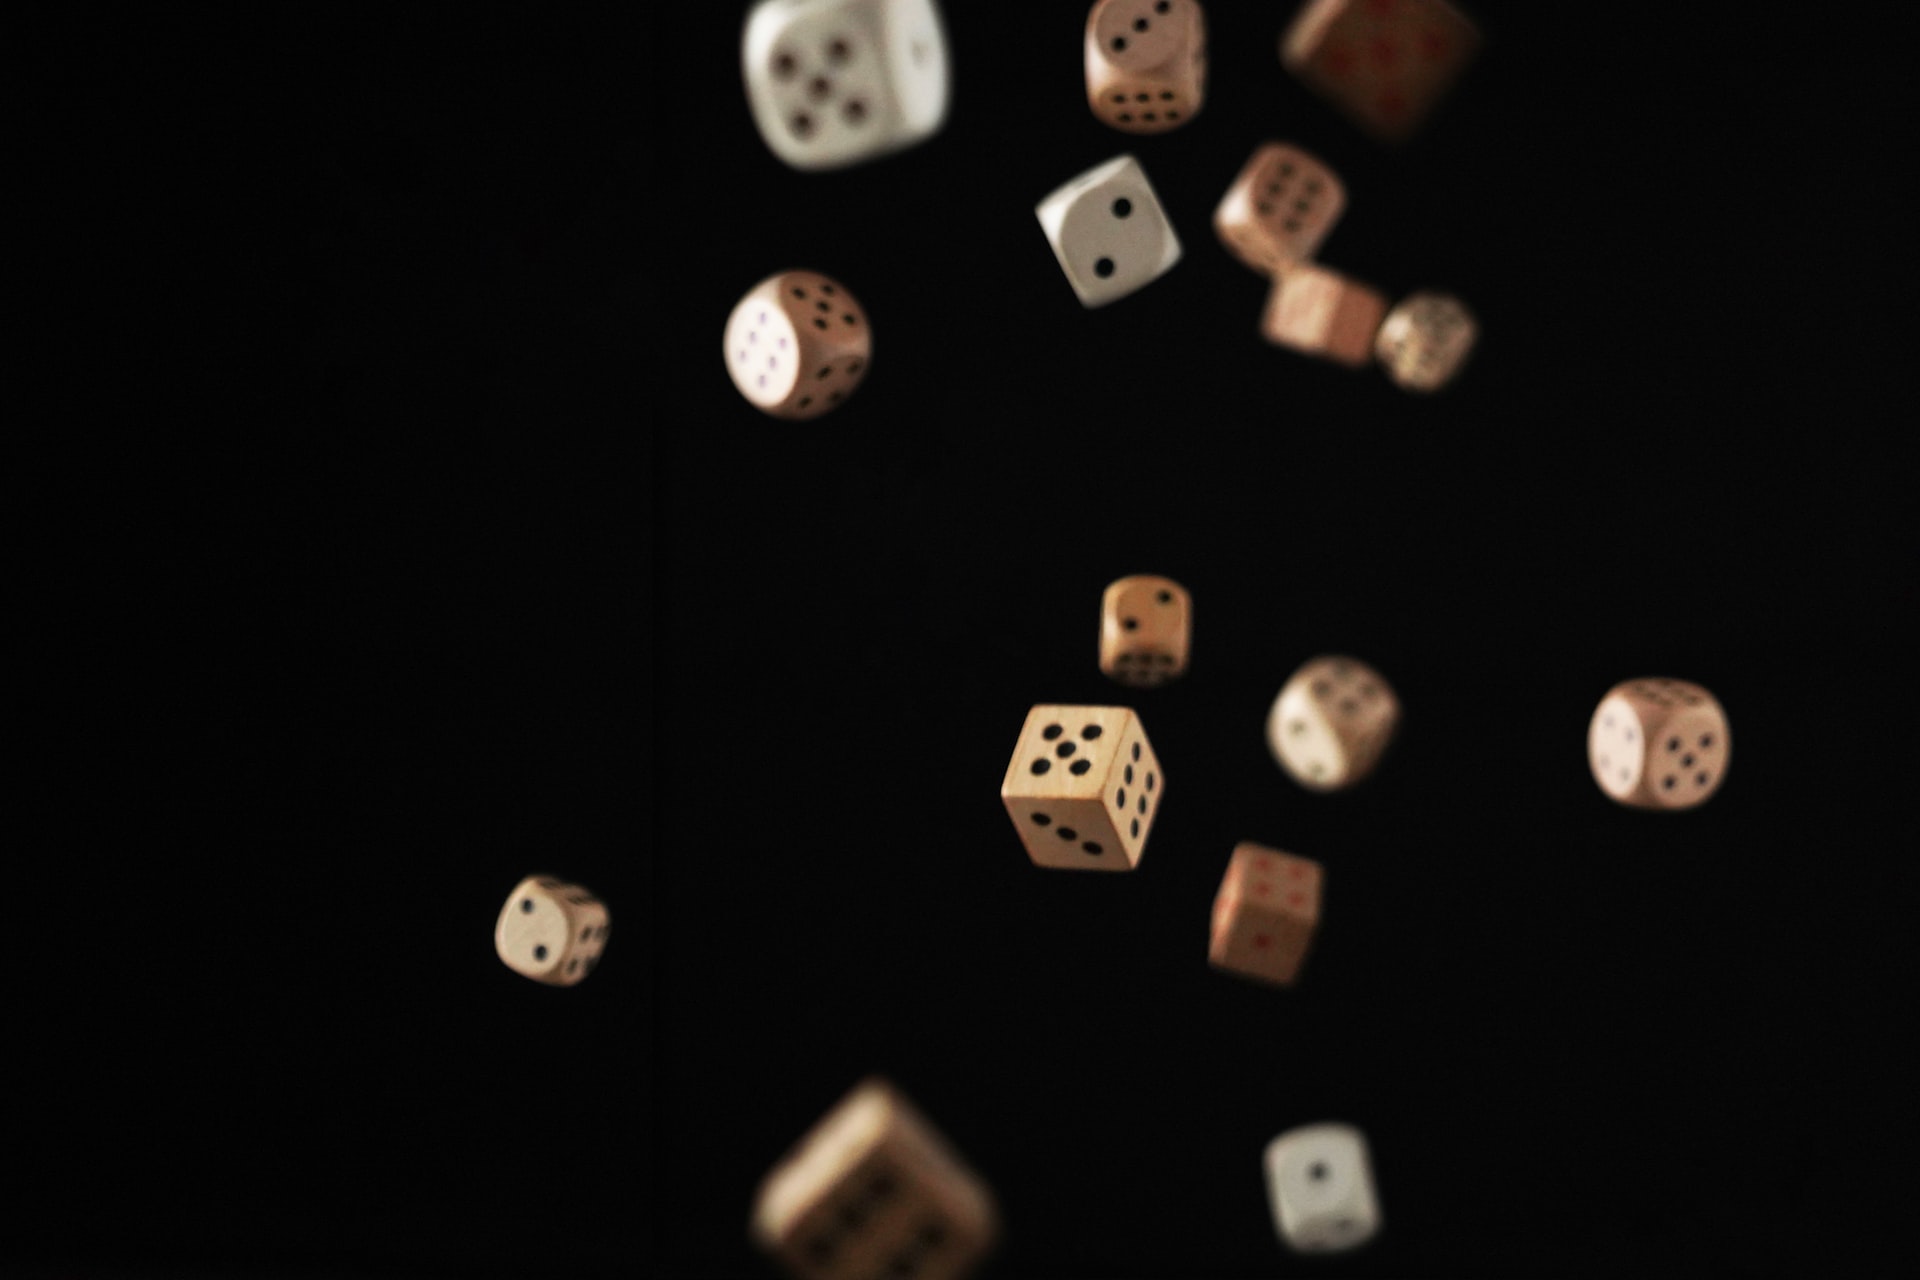 Evoluția jocurilor de noroc: Ce ne spune despre natura umană?